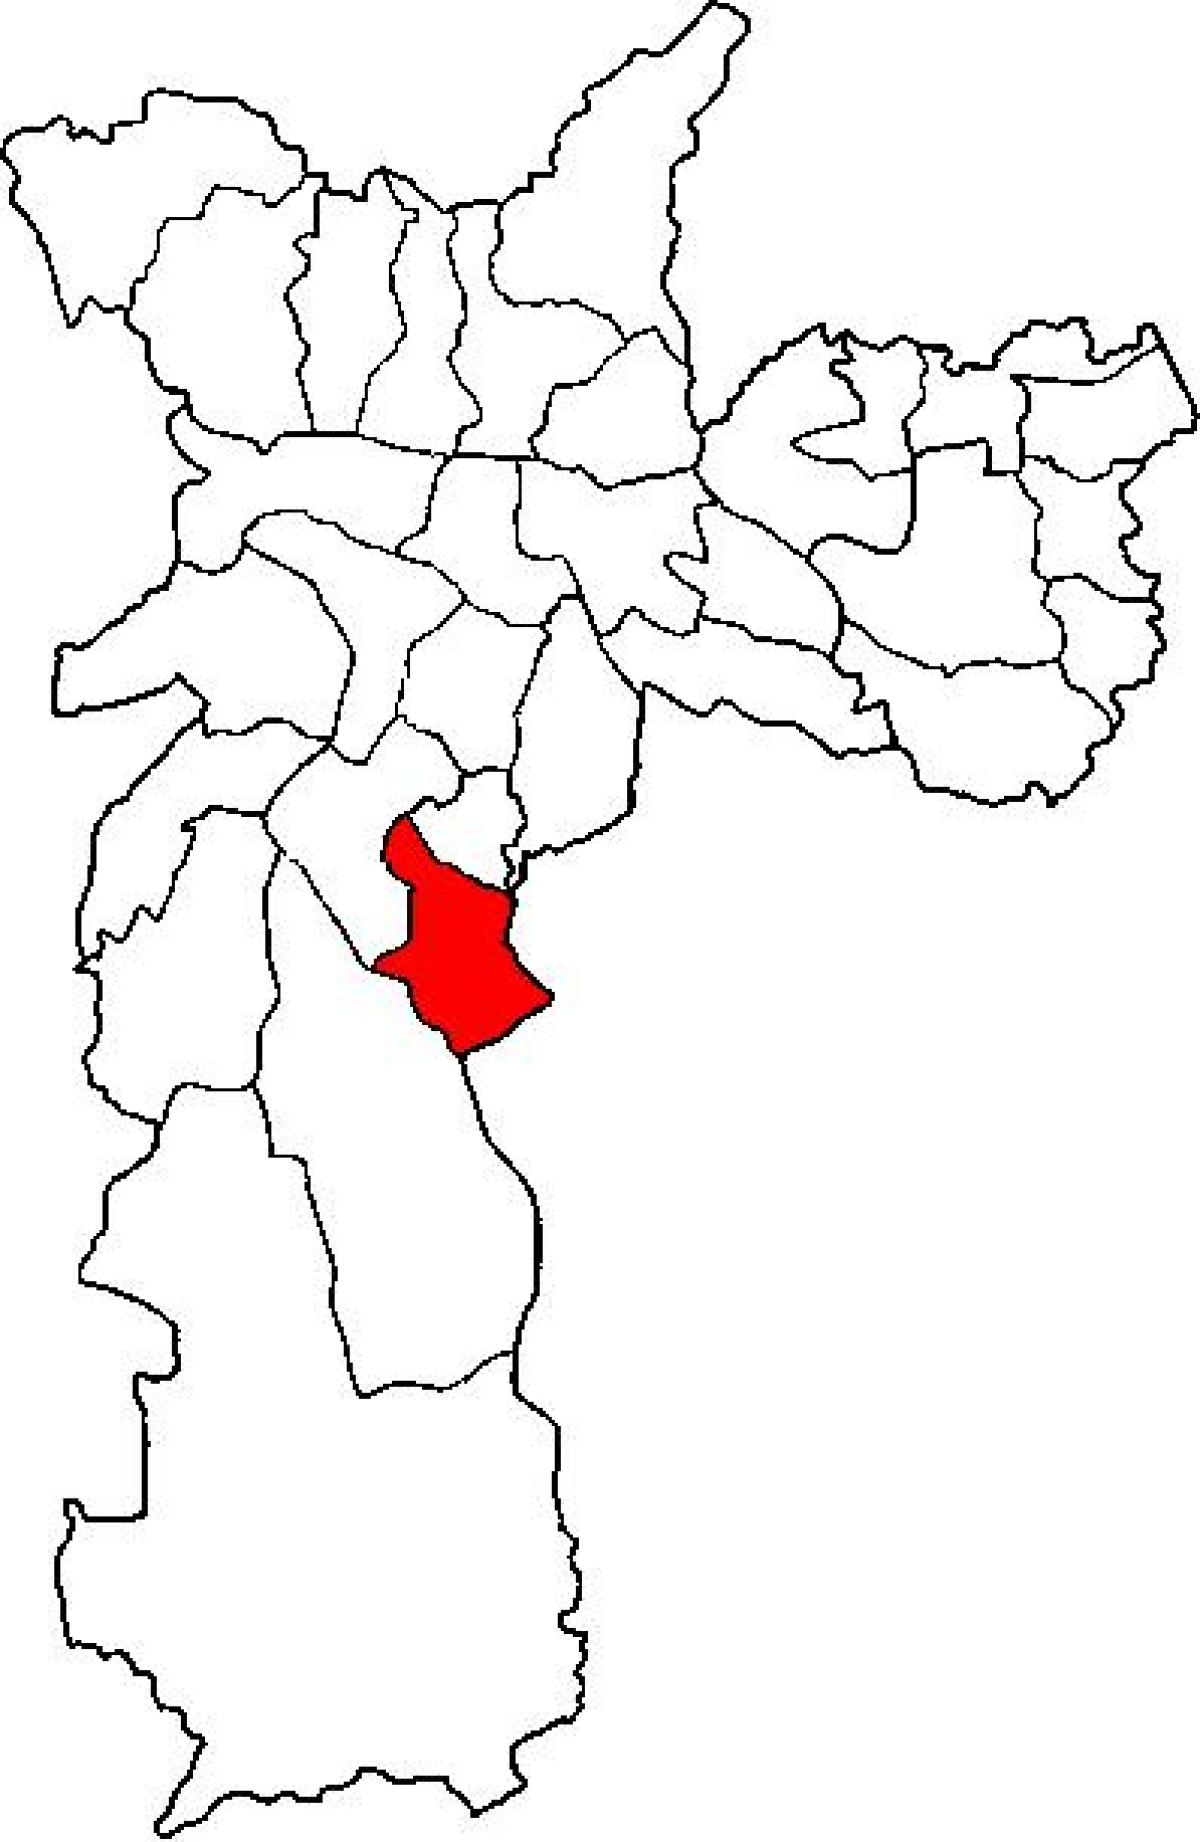 Kort over Cidade Ademar sub-præfekturet São Paulo